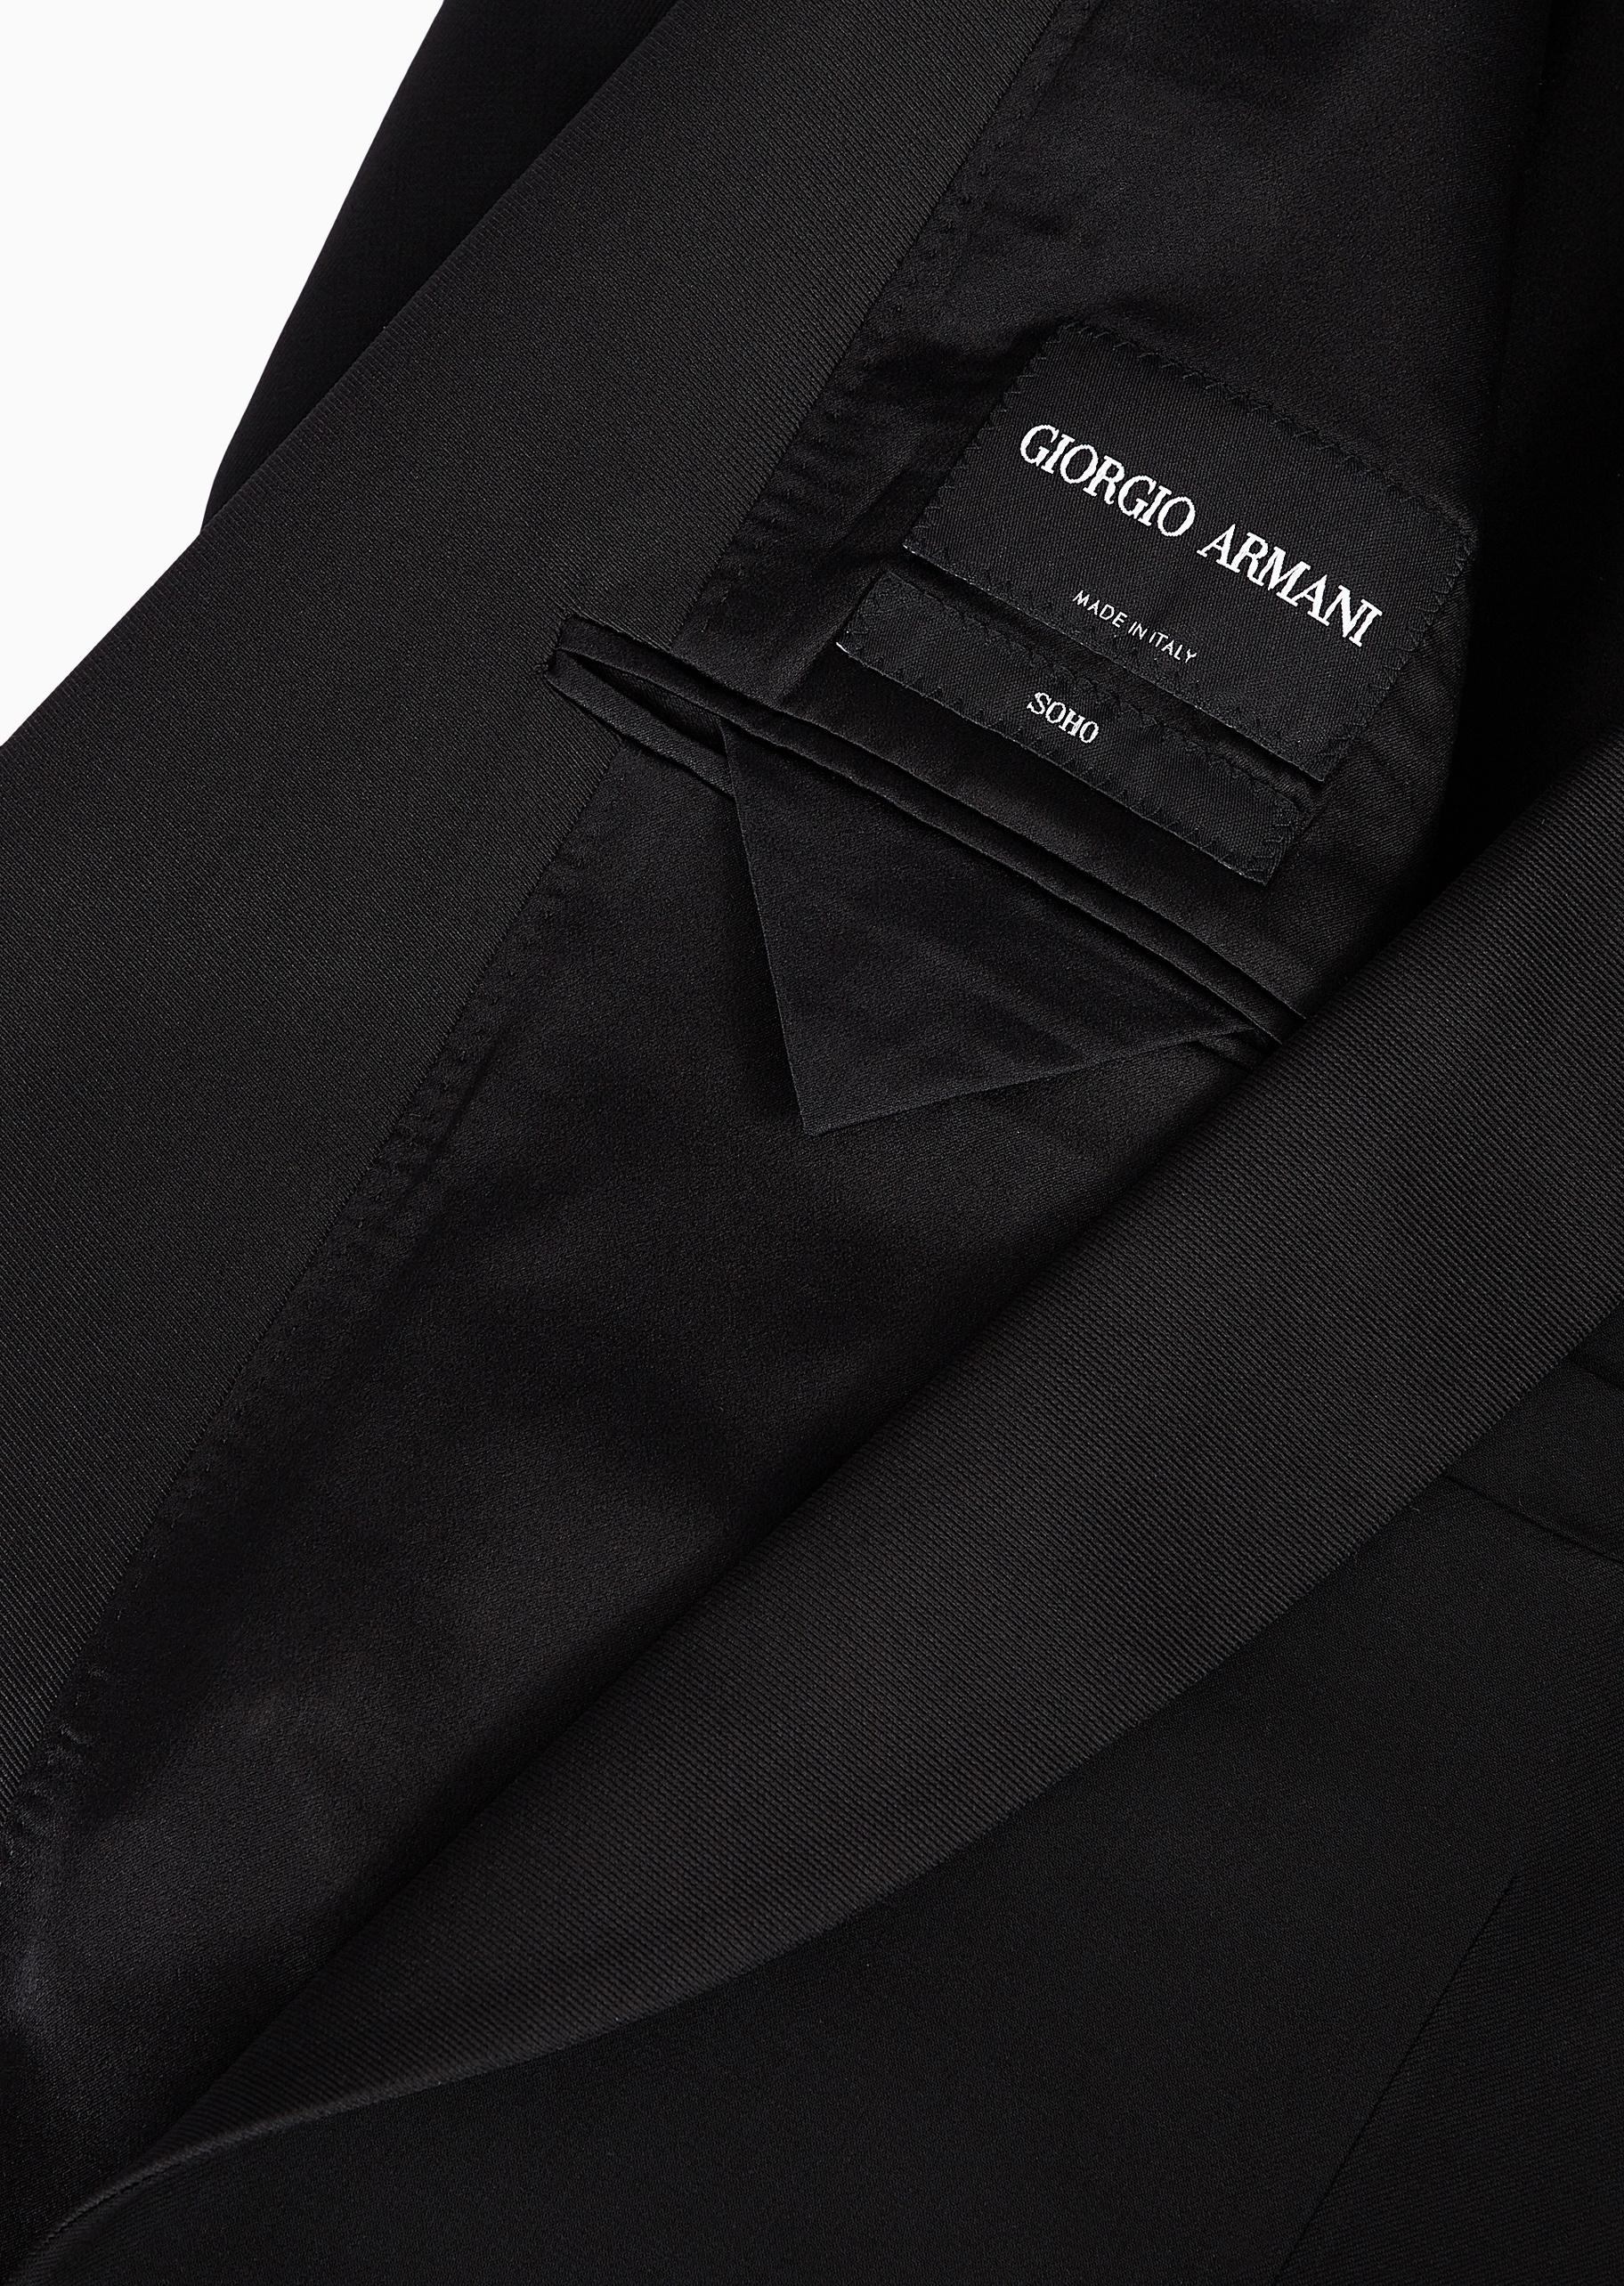 Giorgio Armani 男士全绵羊毛修身青果领外套长裤西装套装